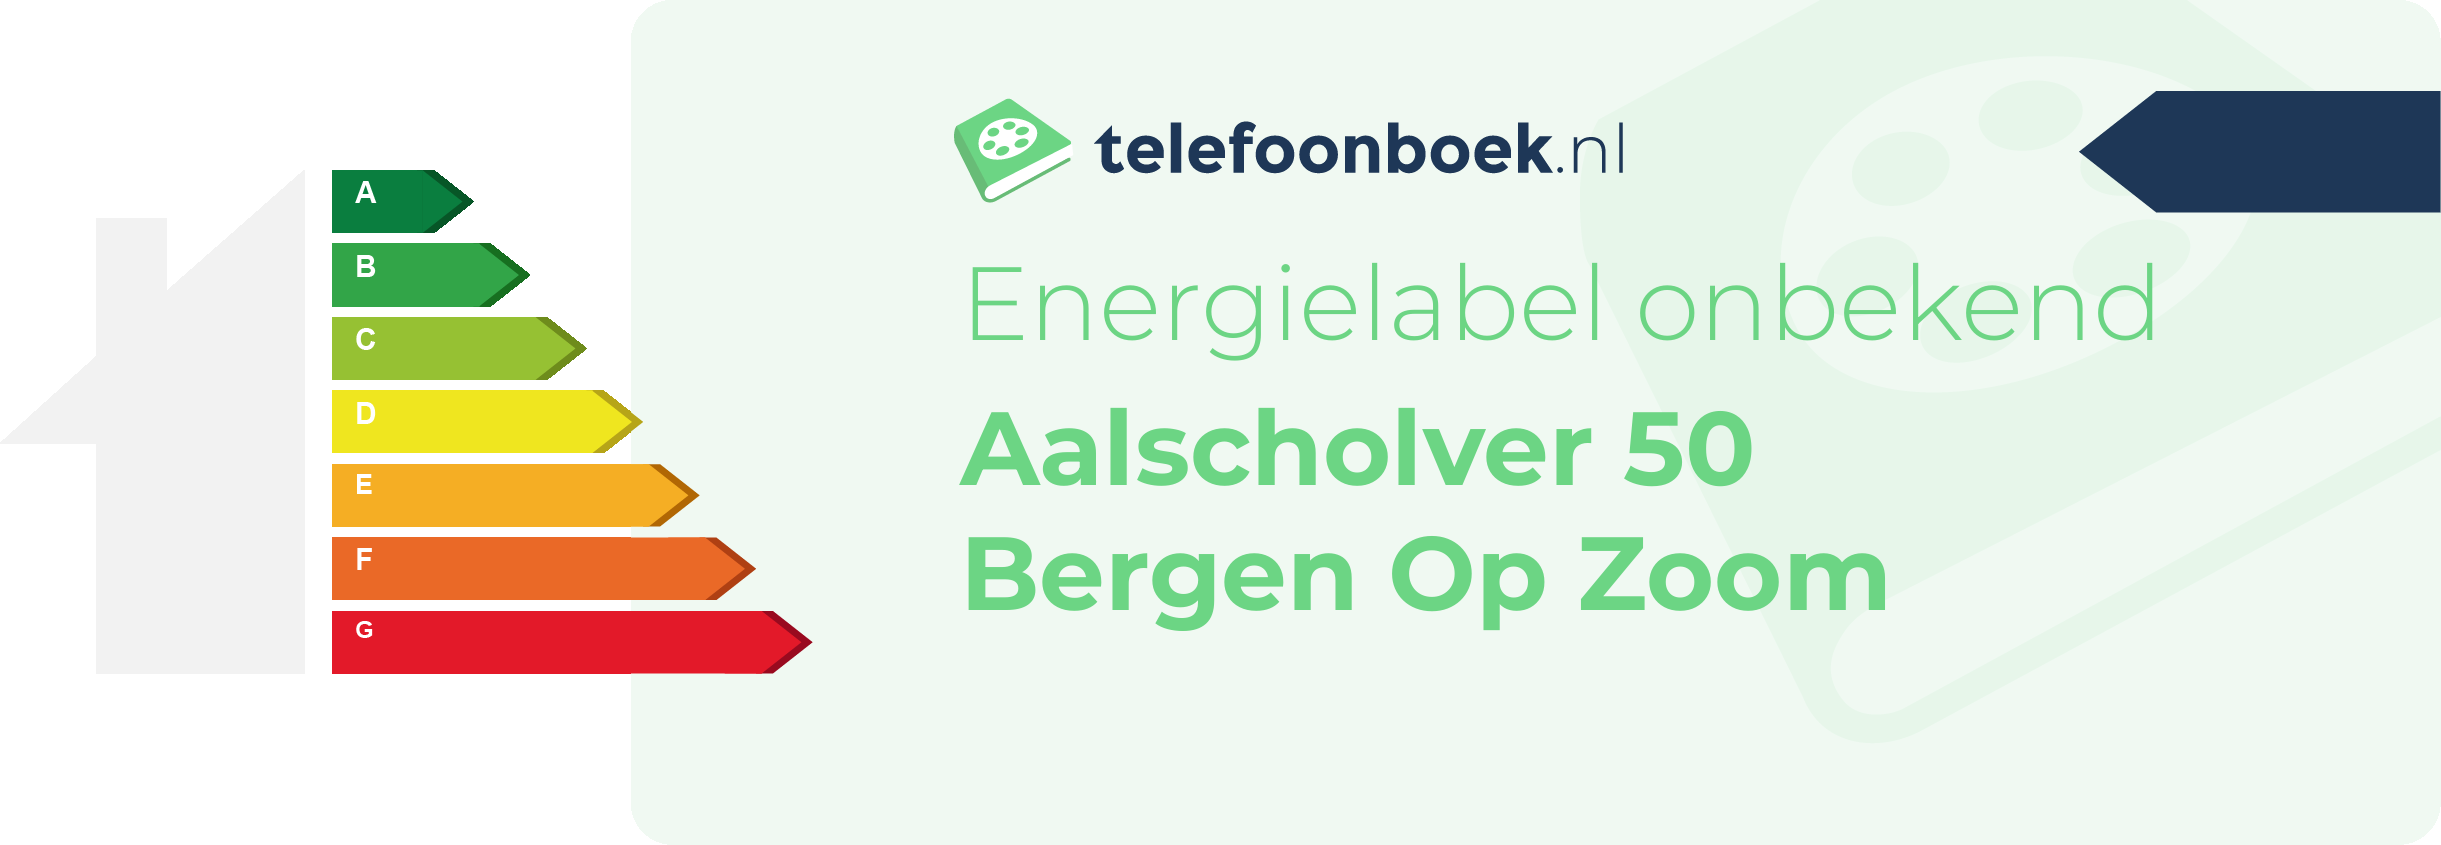 Energielabel Aalscholver 50 Bergen Op Zoom